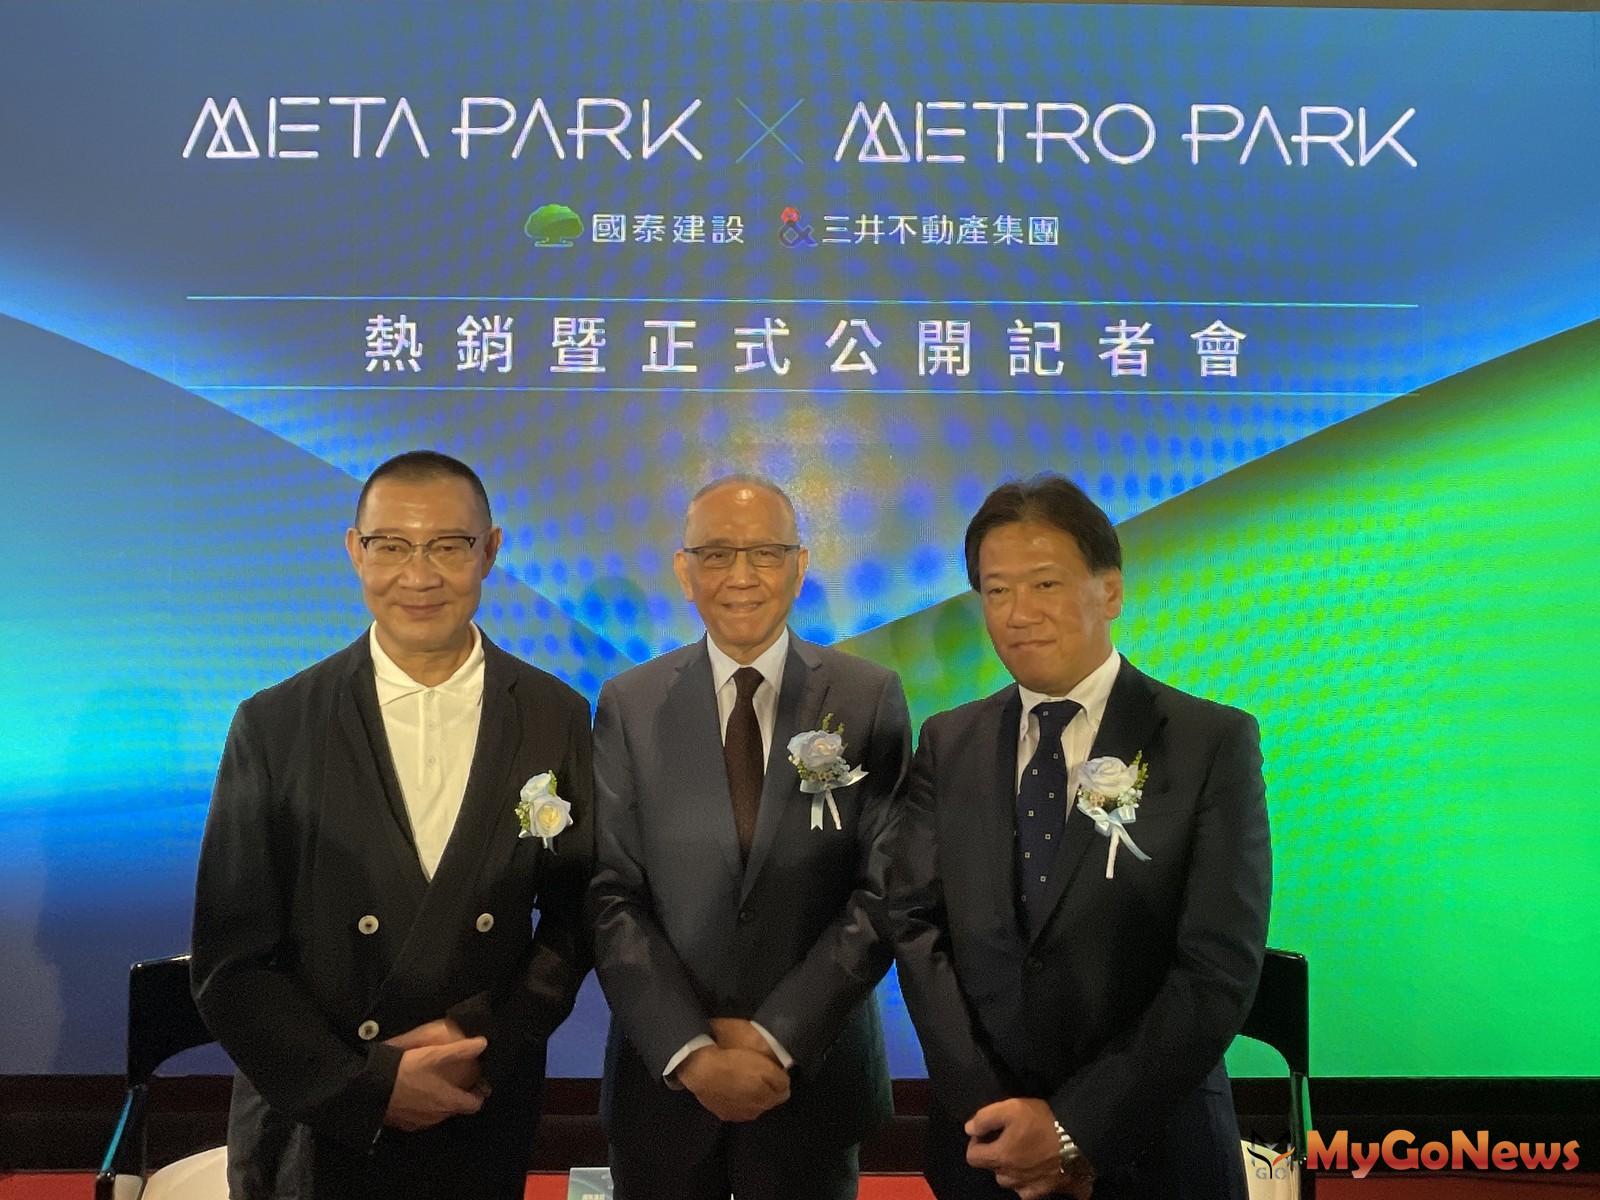 中和捷運地標「METRO PARK」正式公開